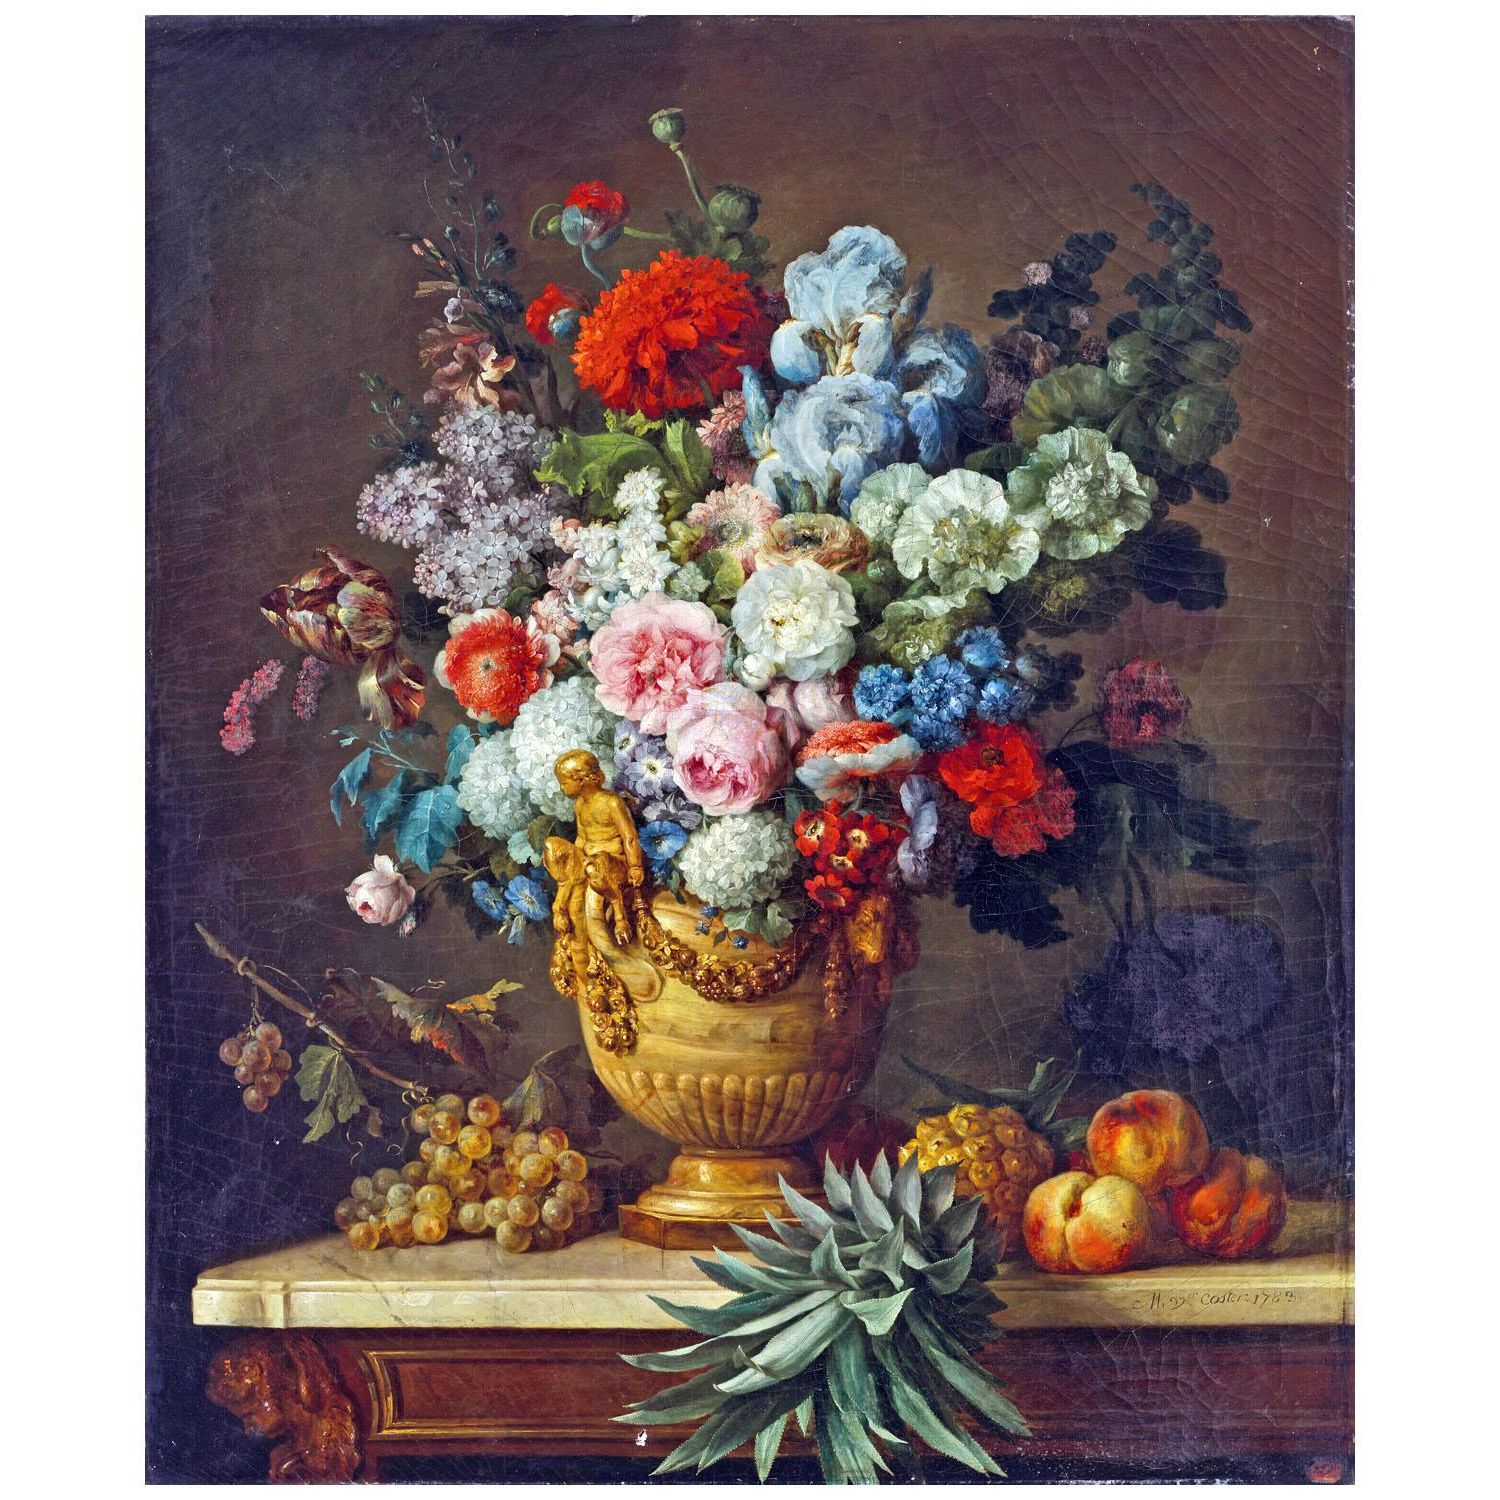 Anne Vallayer-Coster. Vase d’albâtre rempli de fleurs. 1783. NGA Washington